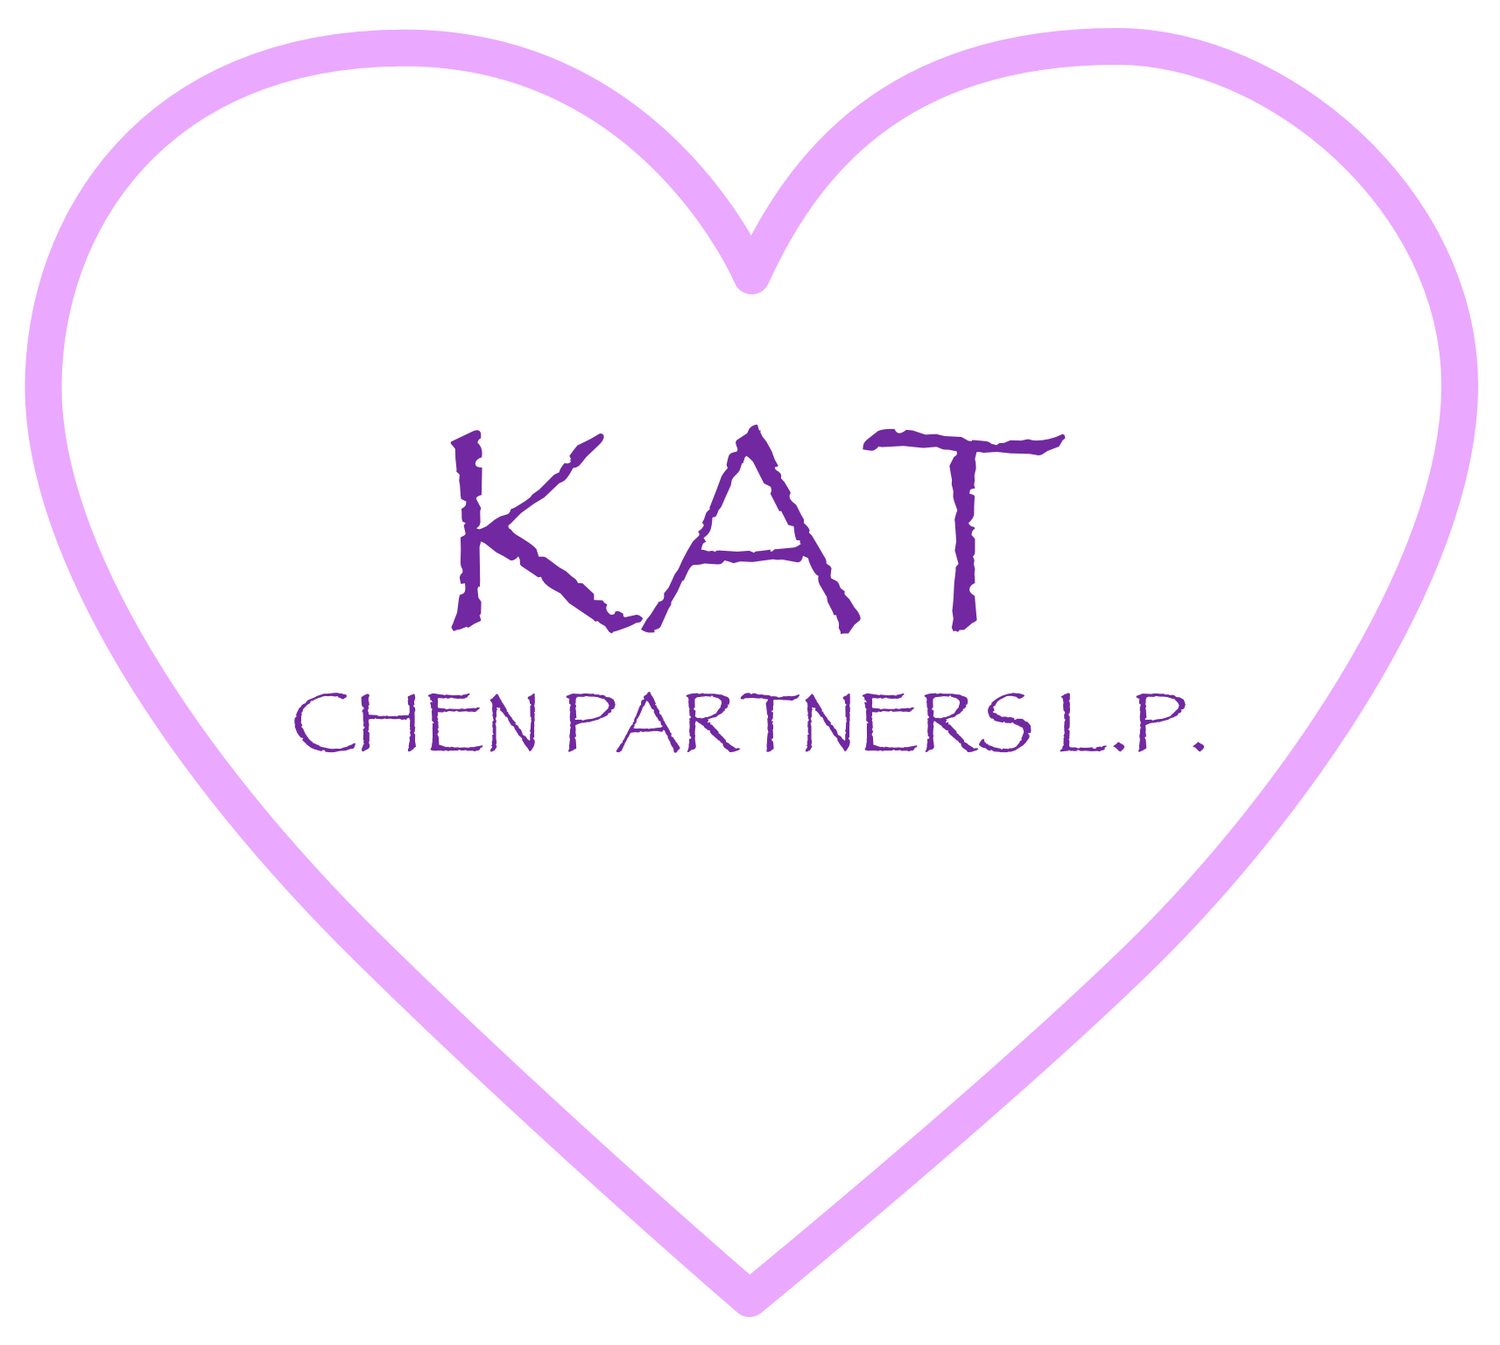 Kat Chen Partners